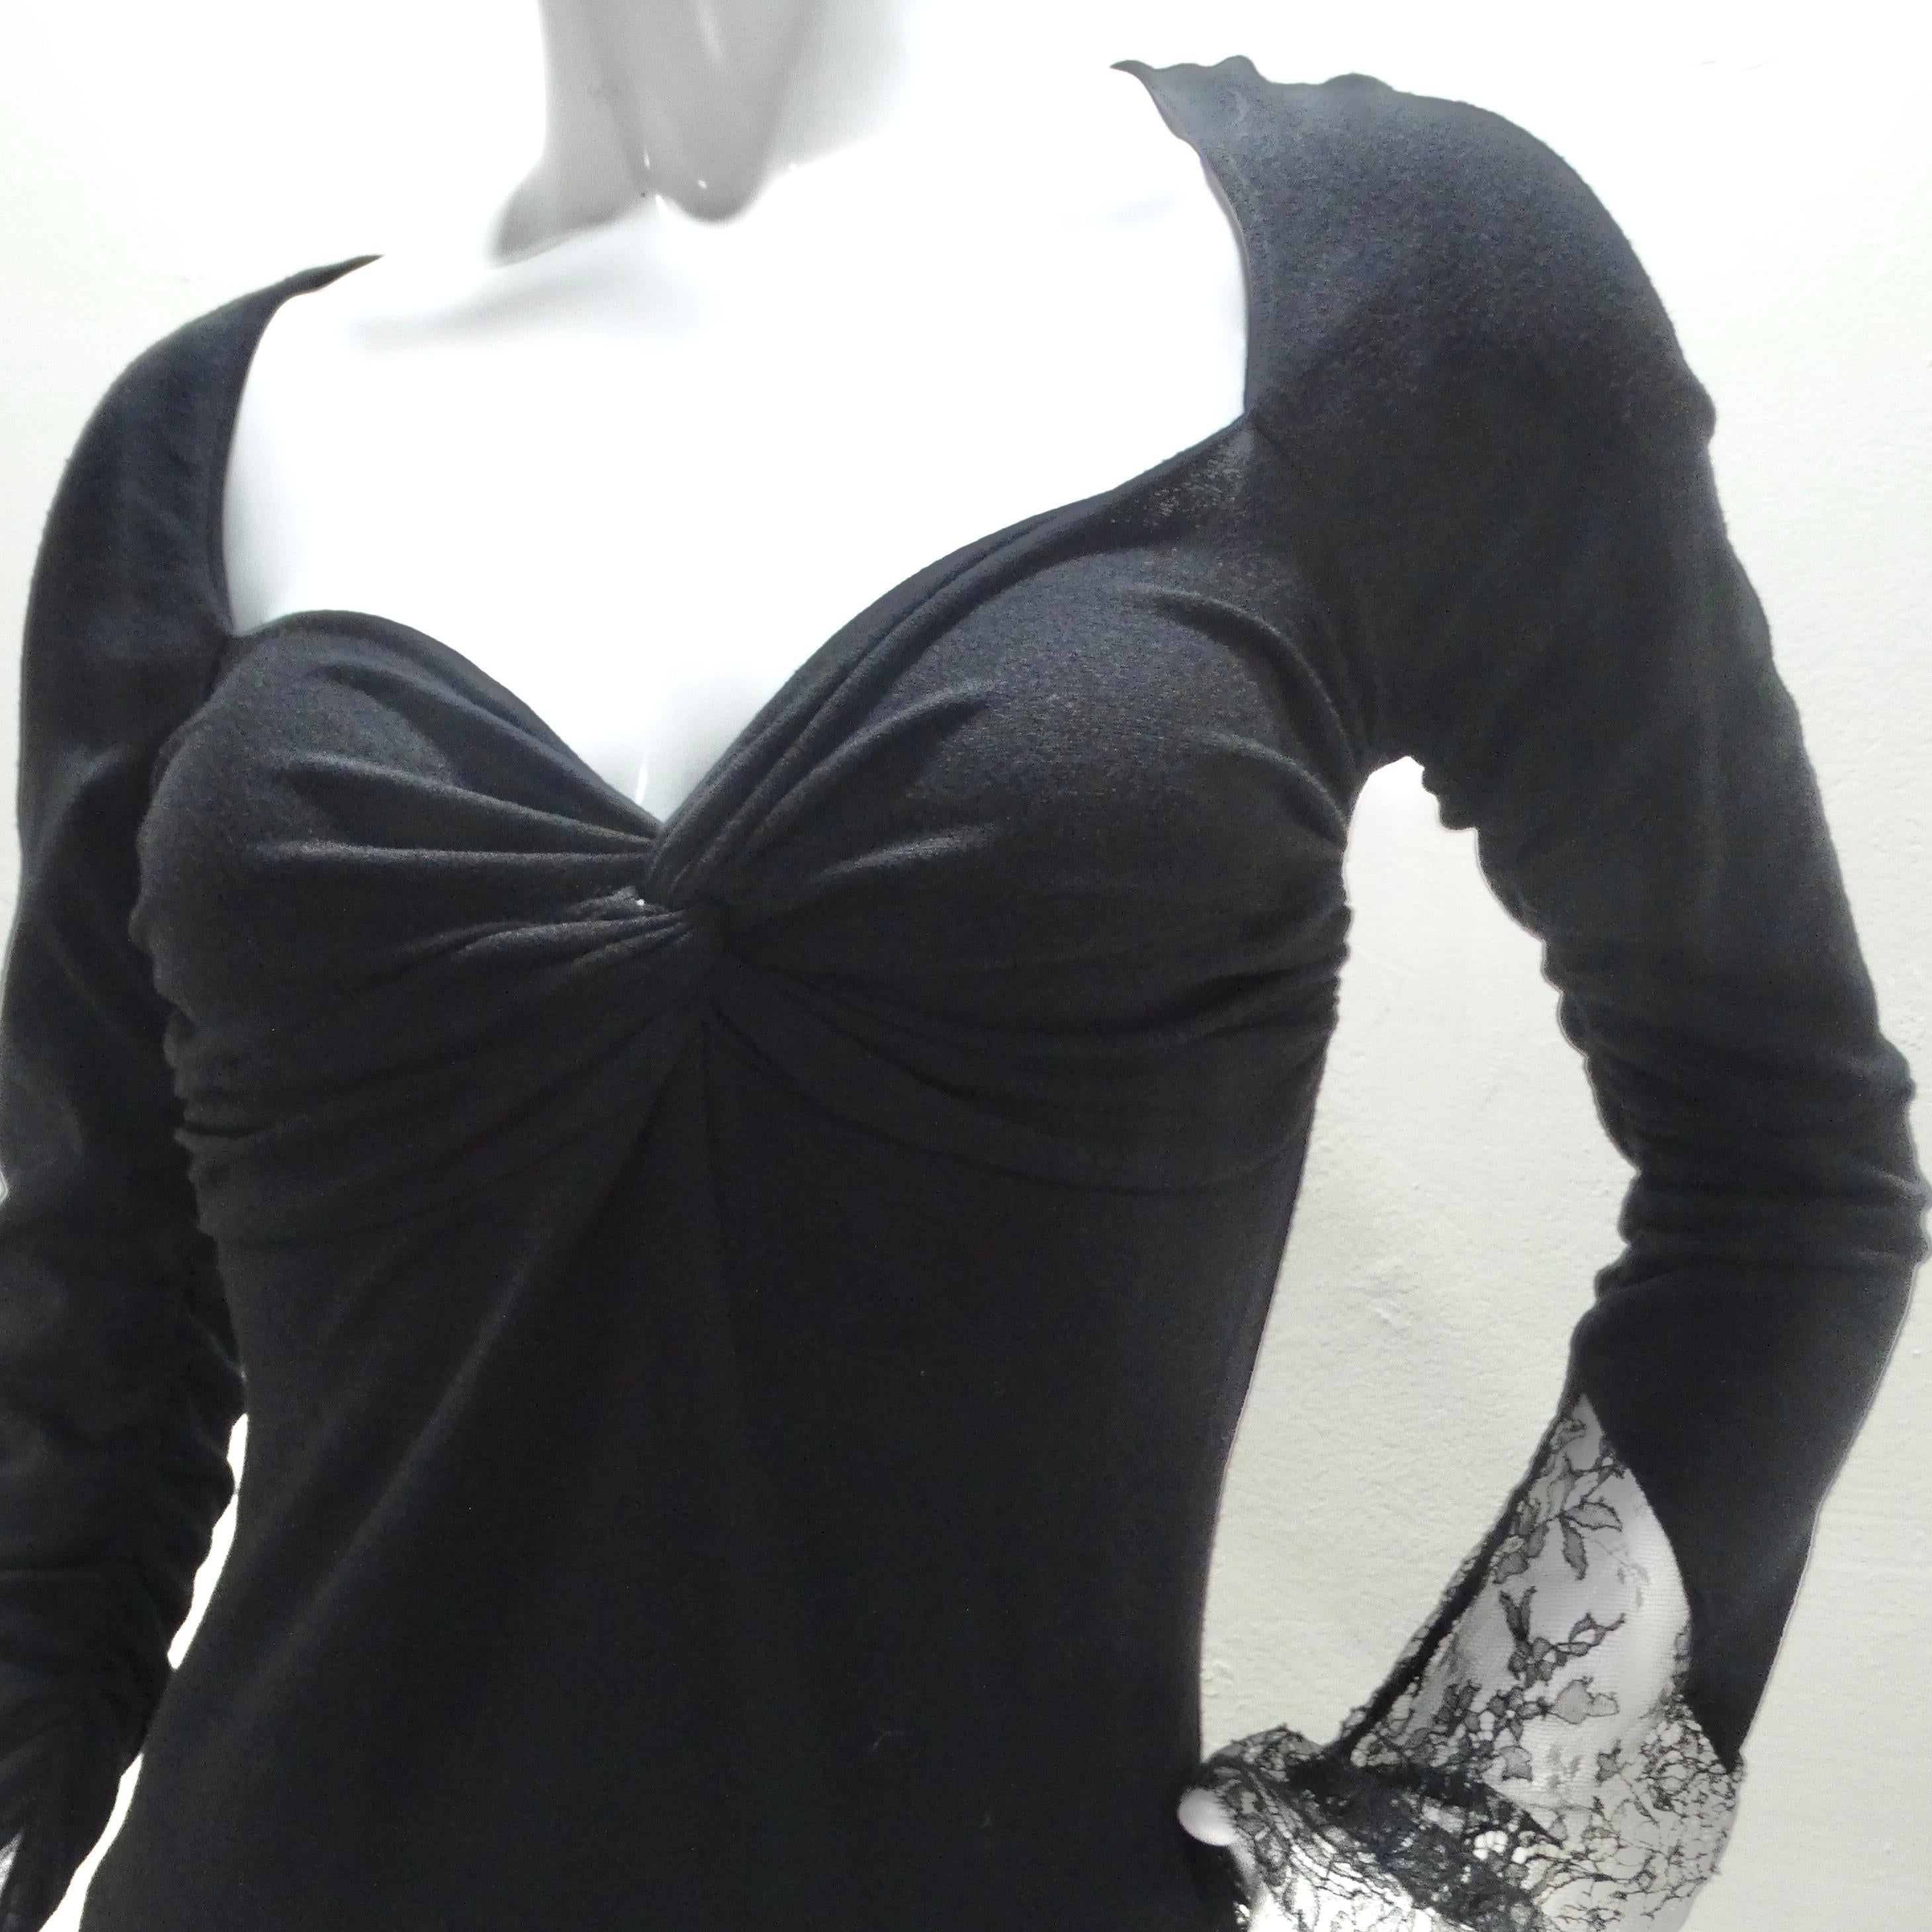 Erhöhen Sie Ihre Garderobe mit der exquisiten Valentino Long Sleeve Twist Motif Lace Blouse - eine Verkörperung von zeitloser Eleganz und moderner Raffinesse. Diese dehnbare und leichte schwarze Strickbluse ist ein Kunstwerk, das die Blicke auf sich